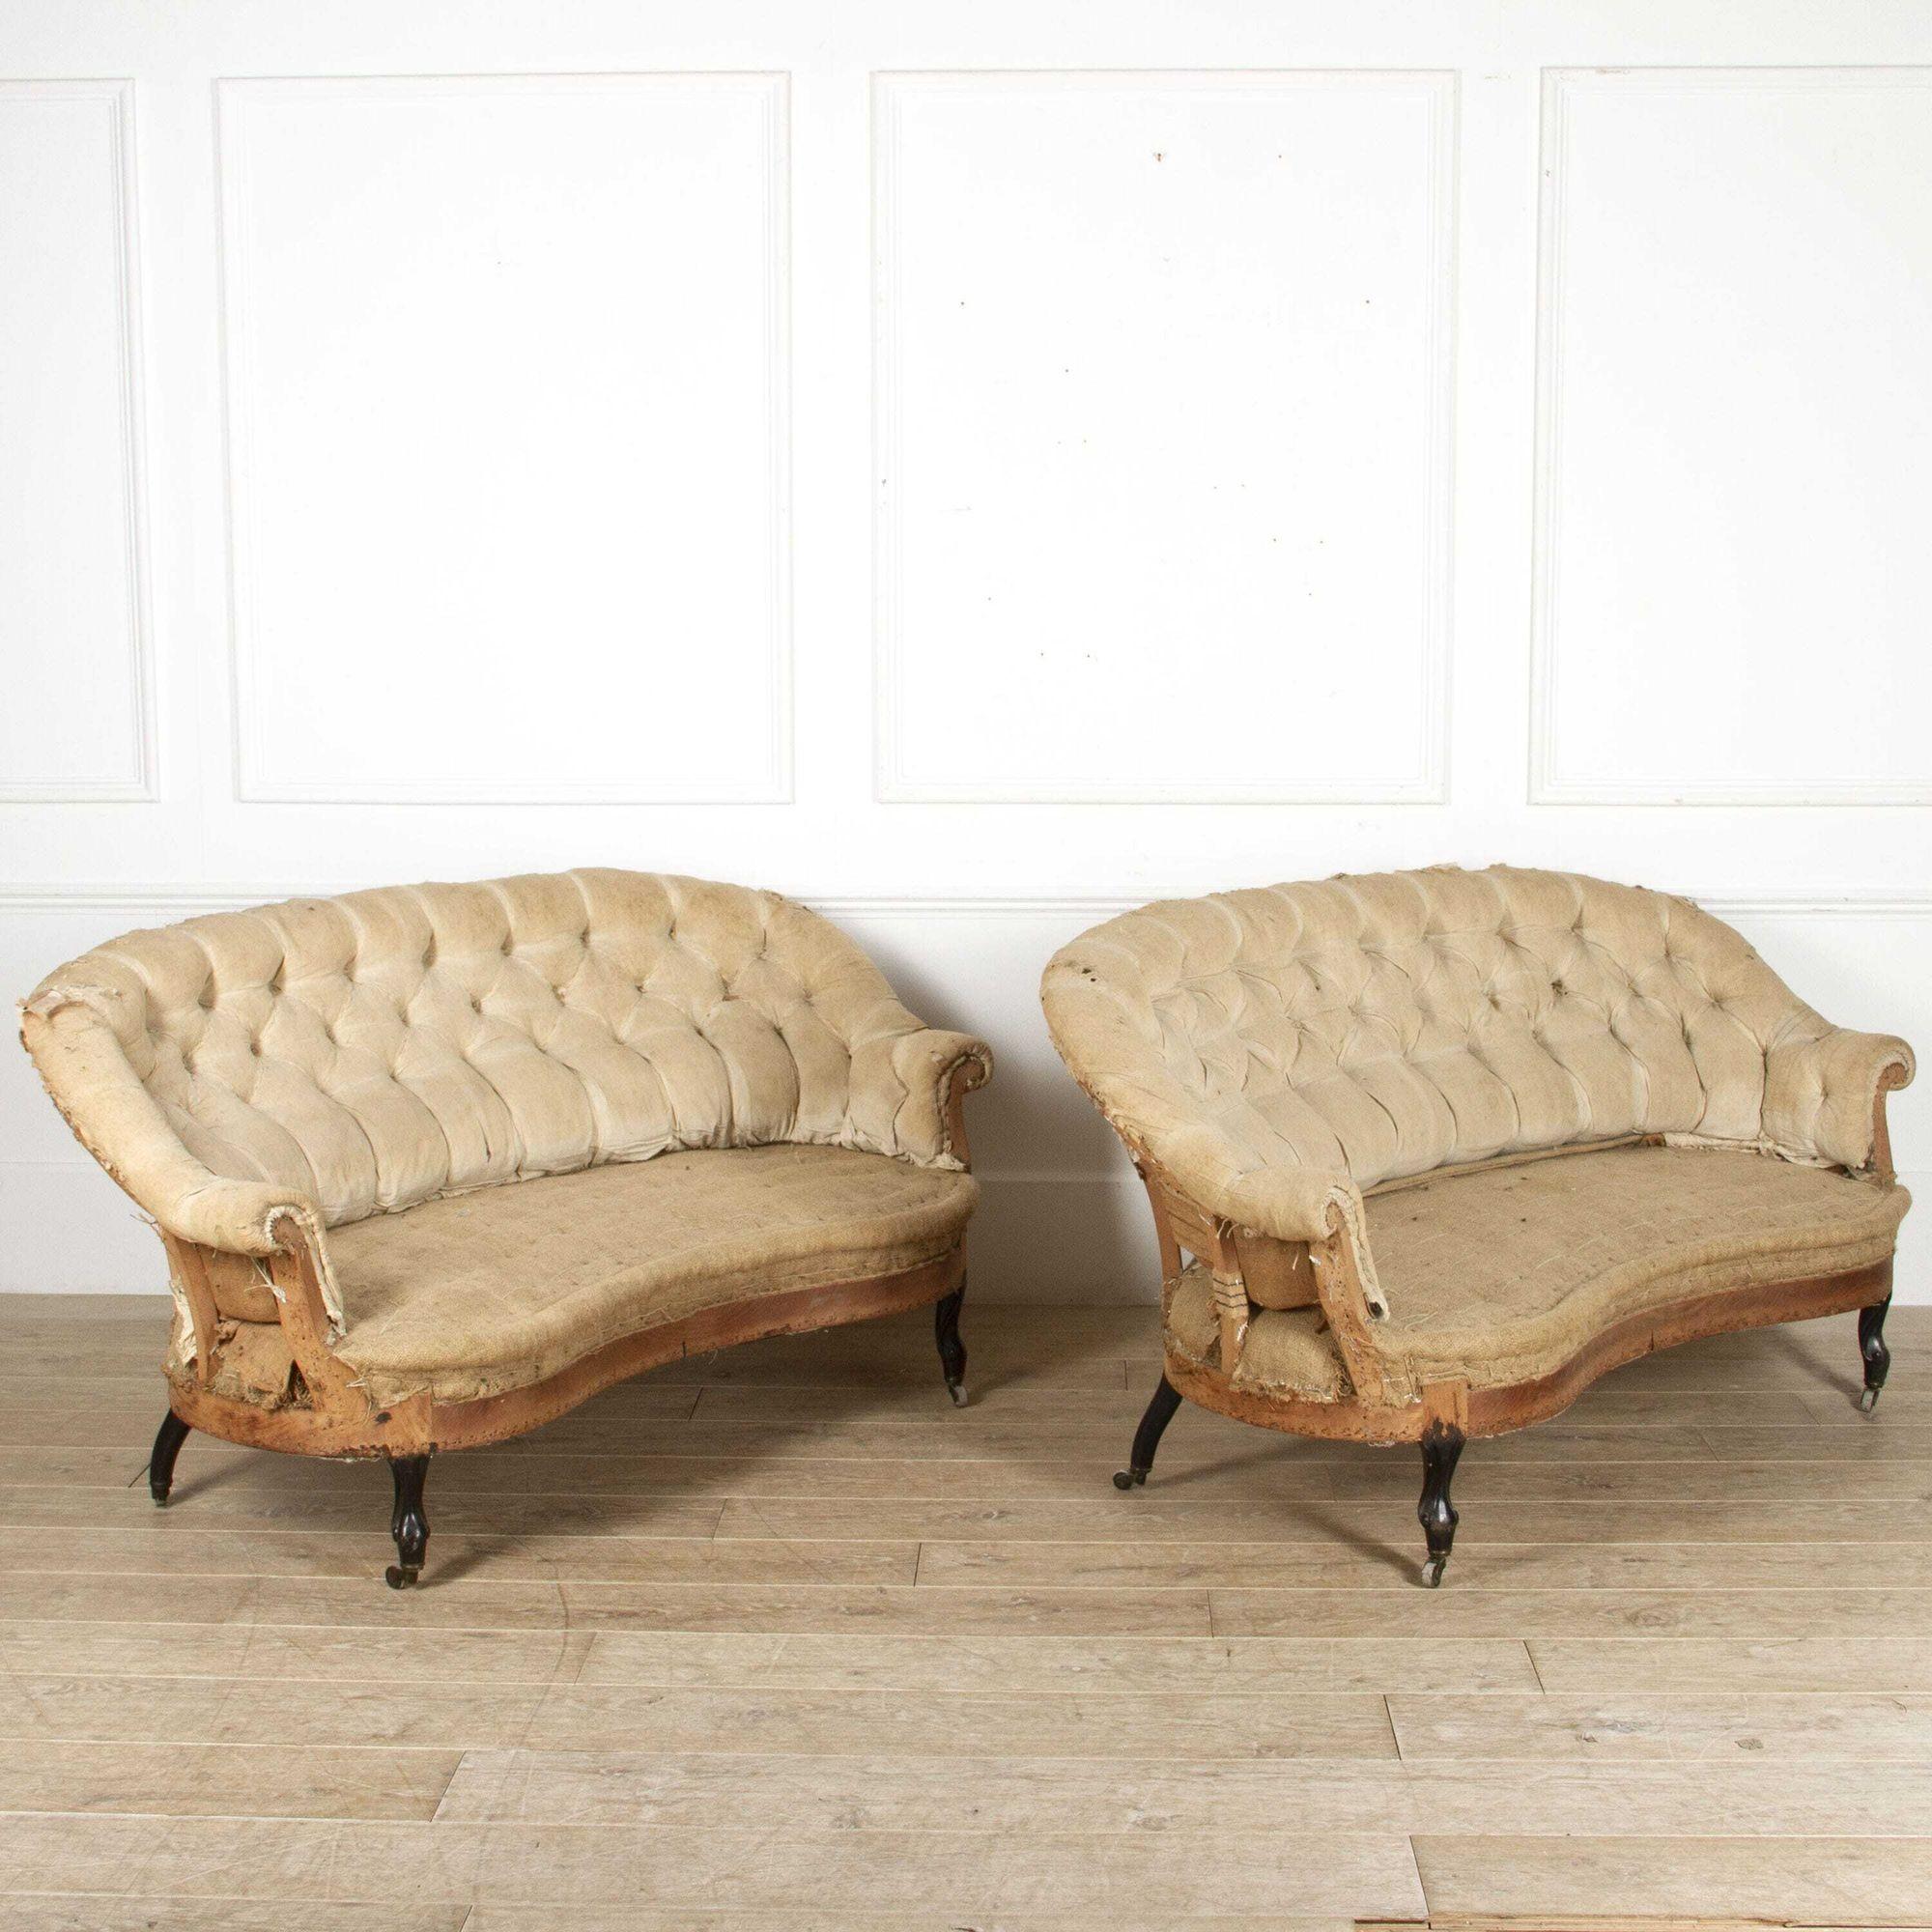 Superbe paire de canapés français dans le style Napoléon III, vers 1880.
Ces canapés classiques sont dotés d'un cadre aux formes élégantes et de leurs dossiers à boutons d'origine. 
Ils sont tous deux de grande forme et de grande taille, ce qui